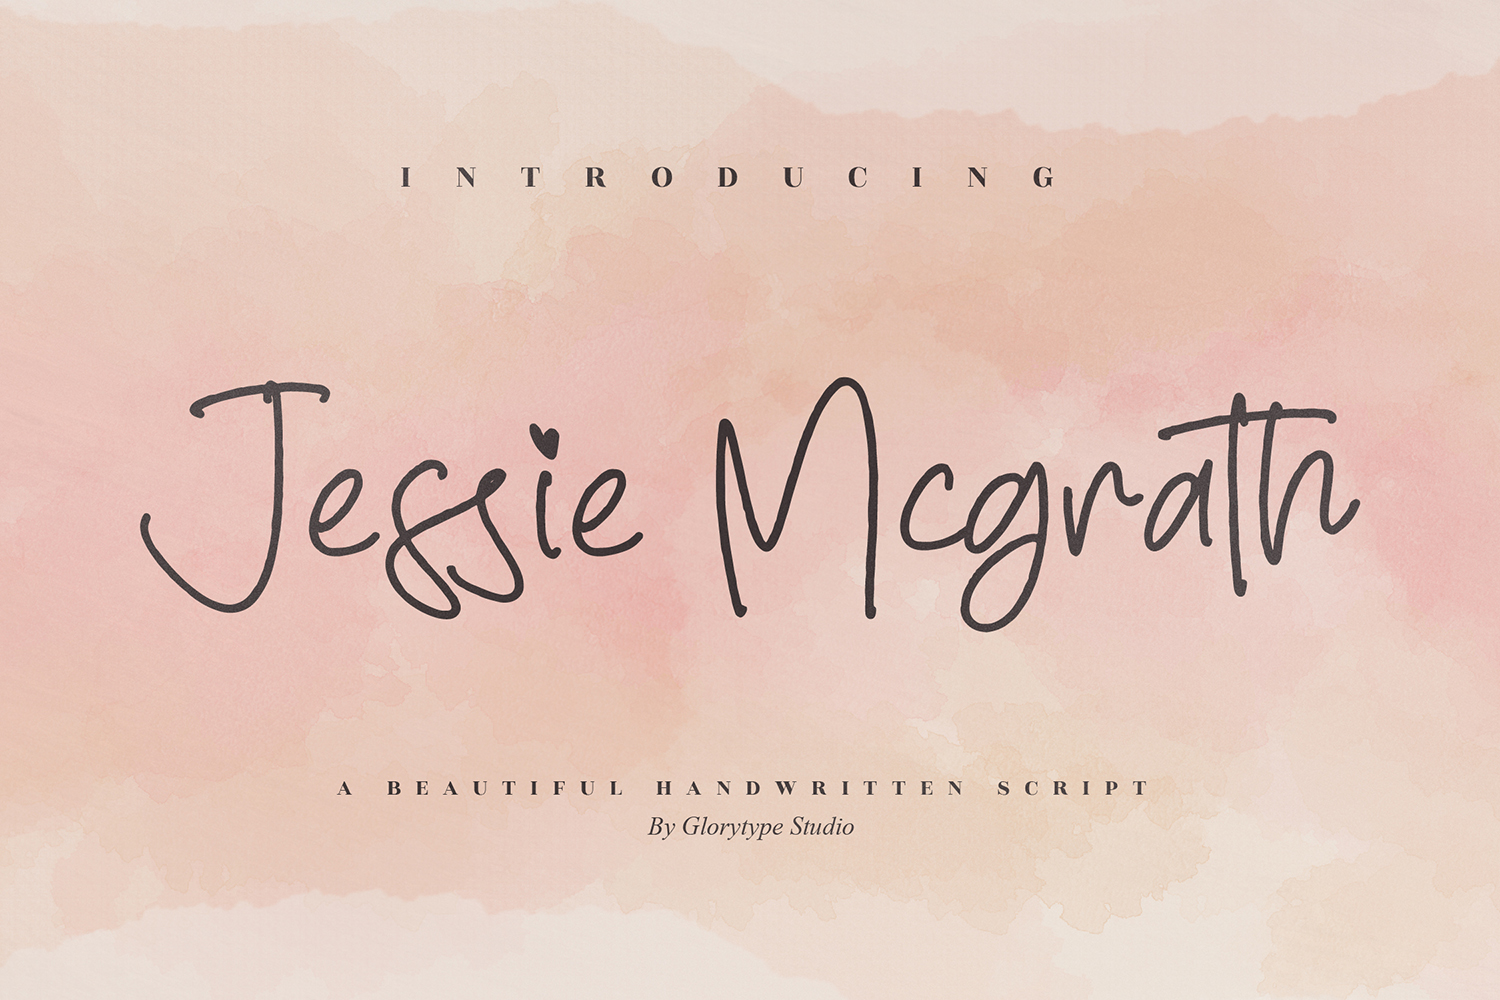 Jessie Mcgrath Free Font